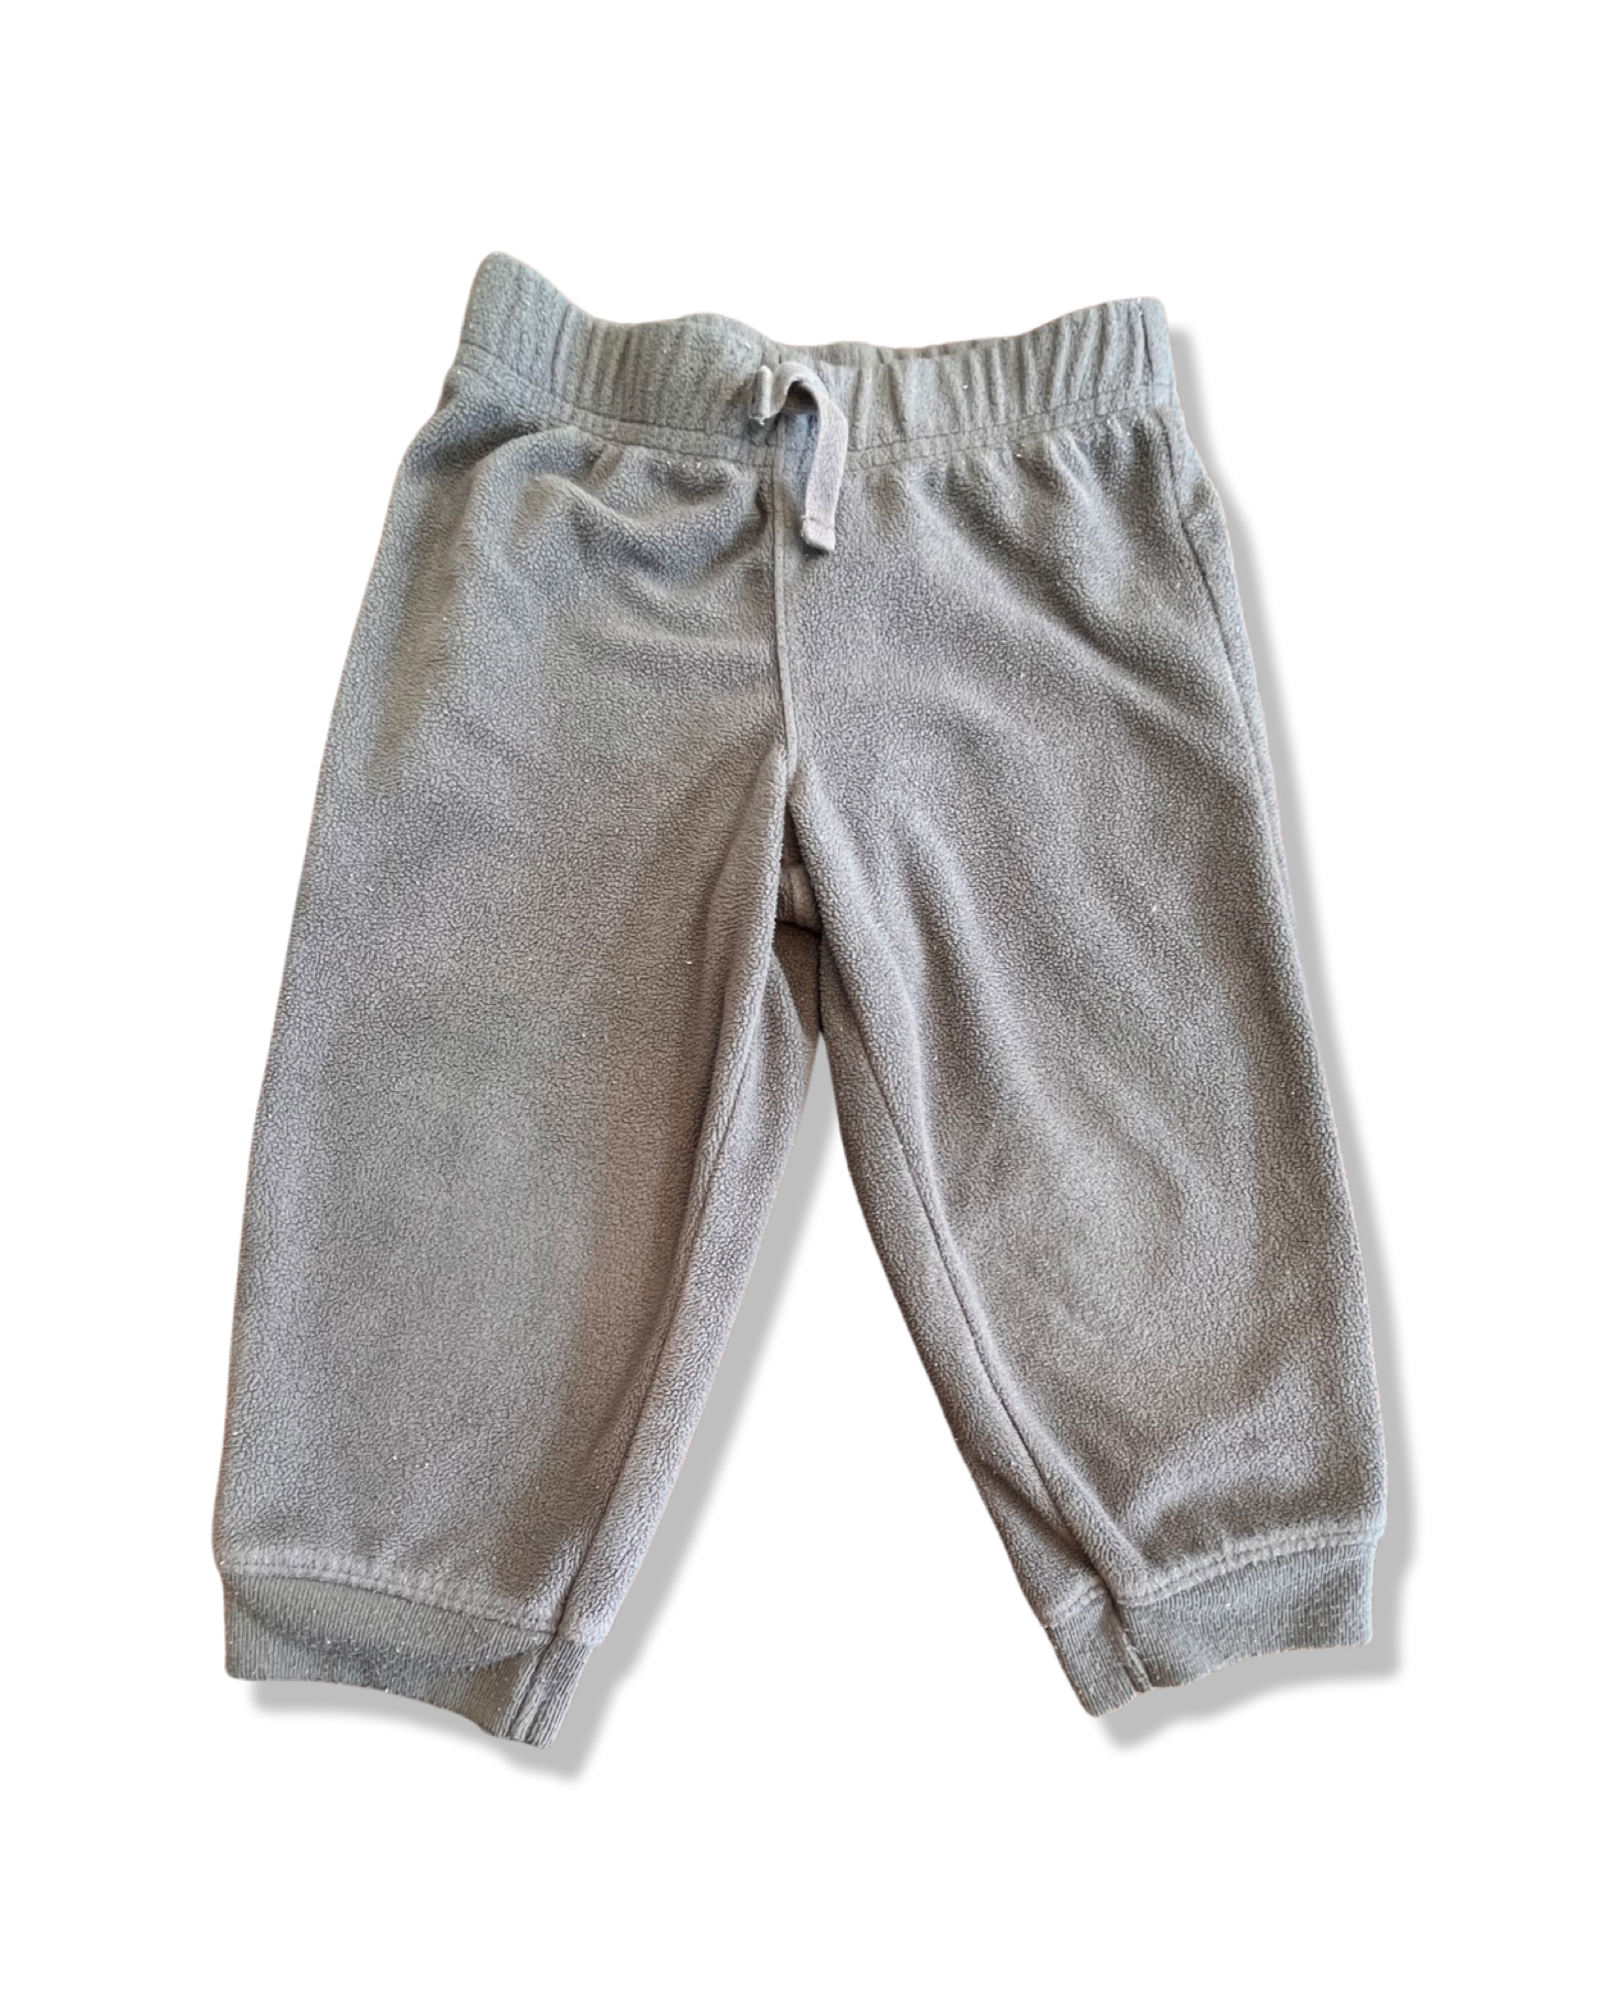 Carter's Grey Fleece Pants (18M)